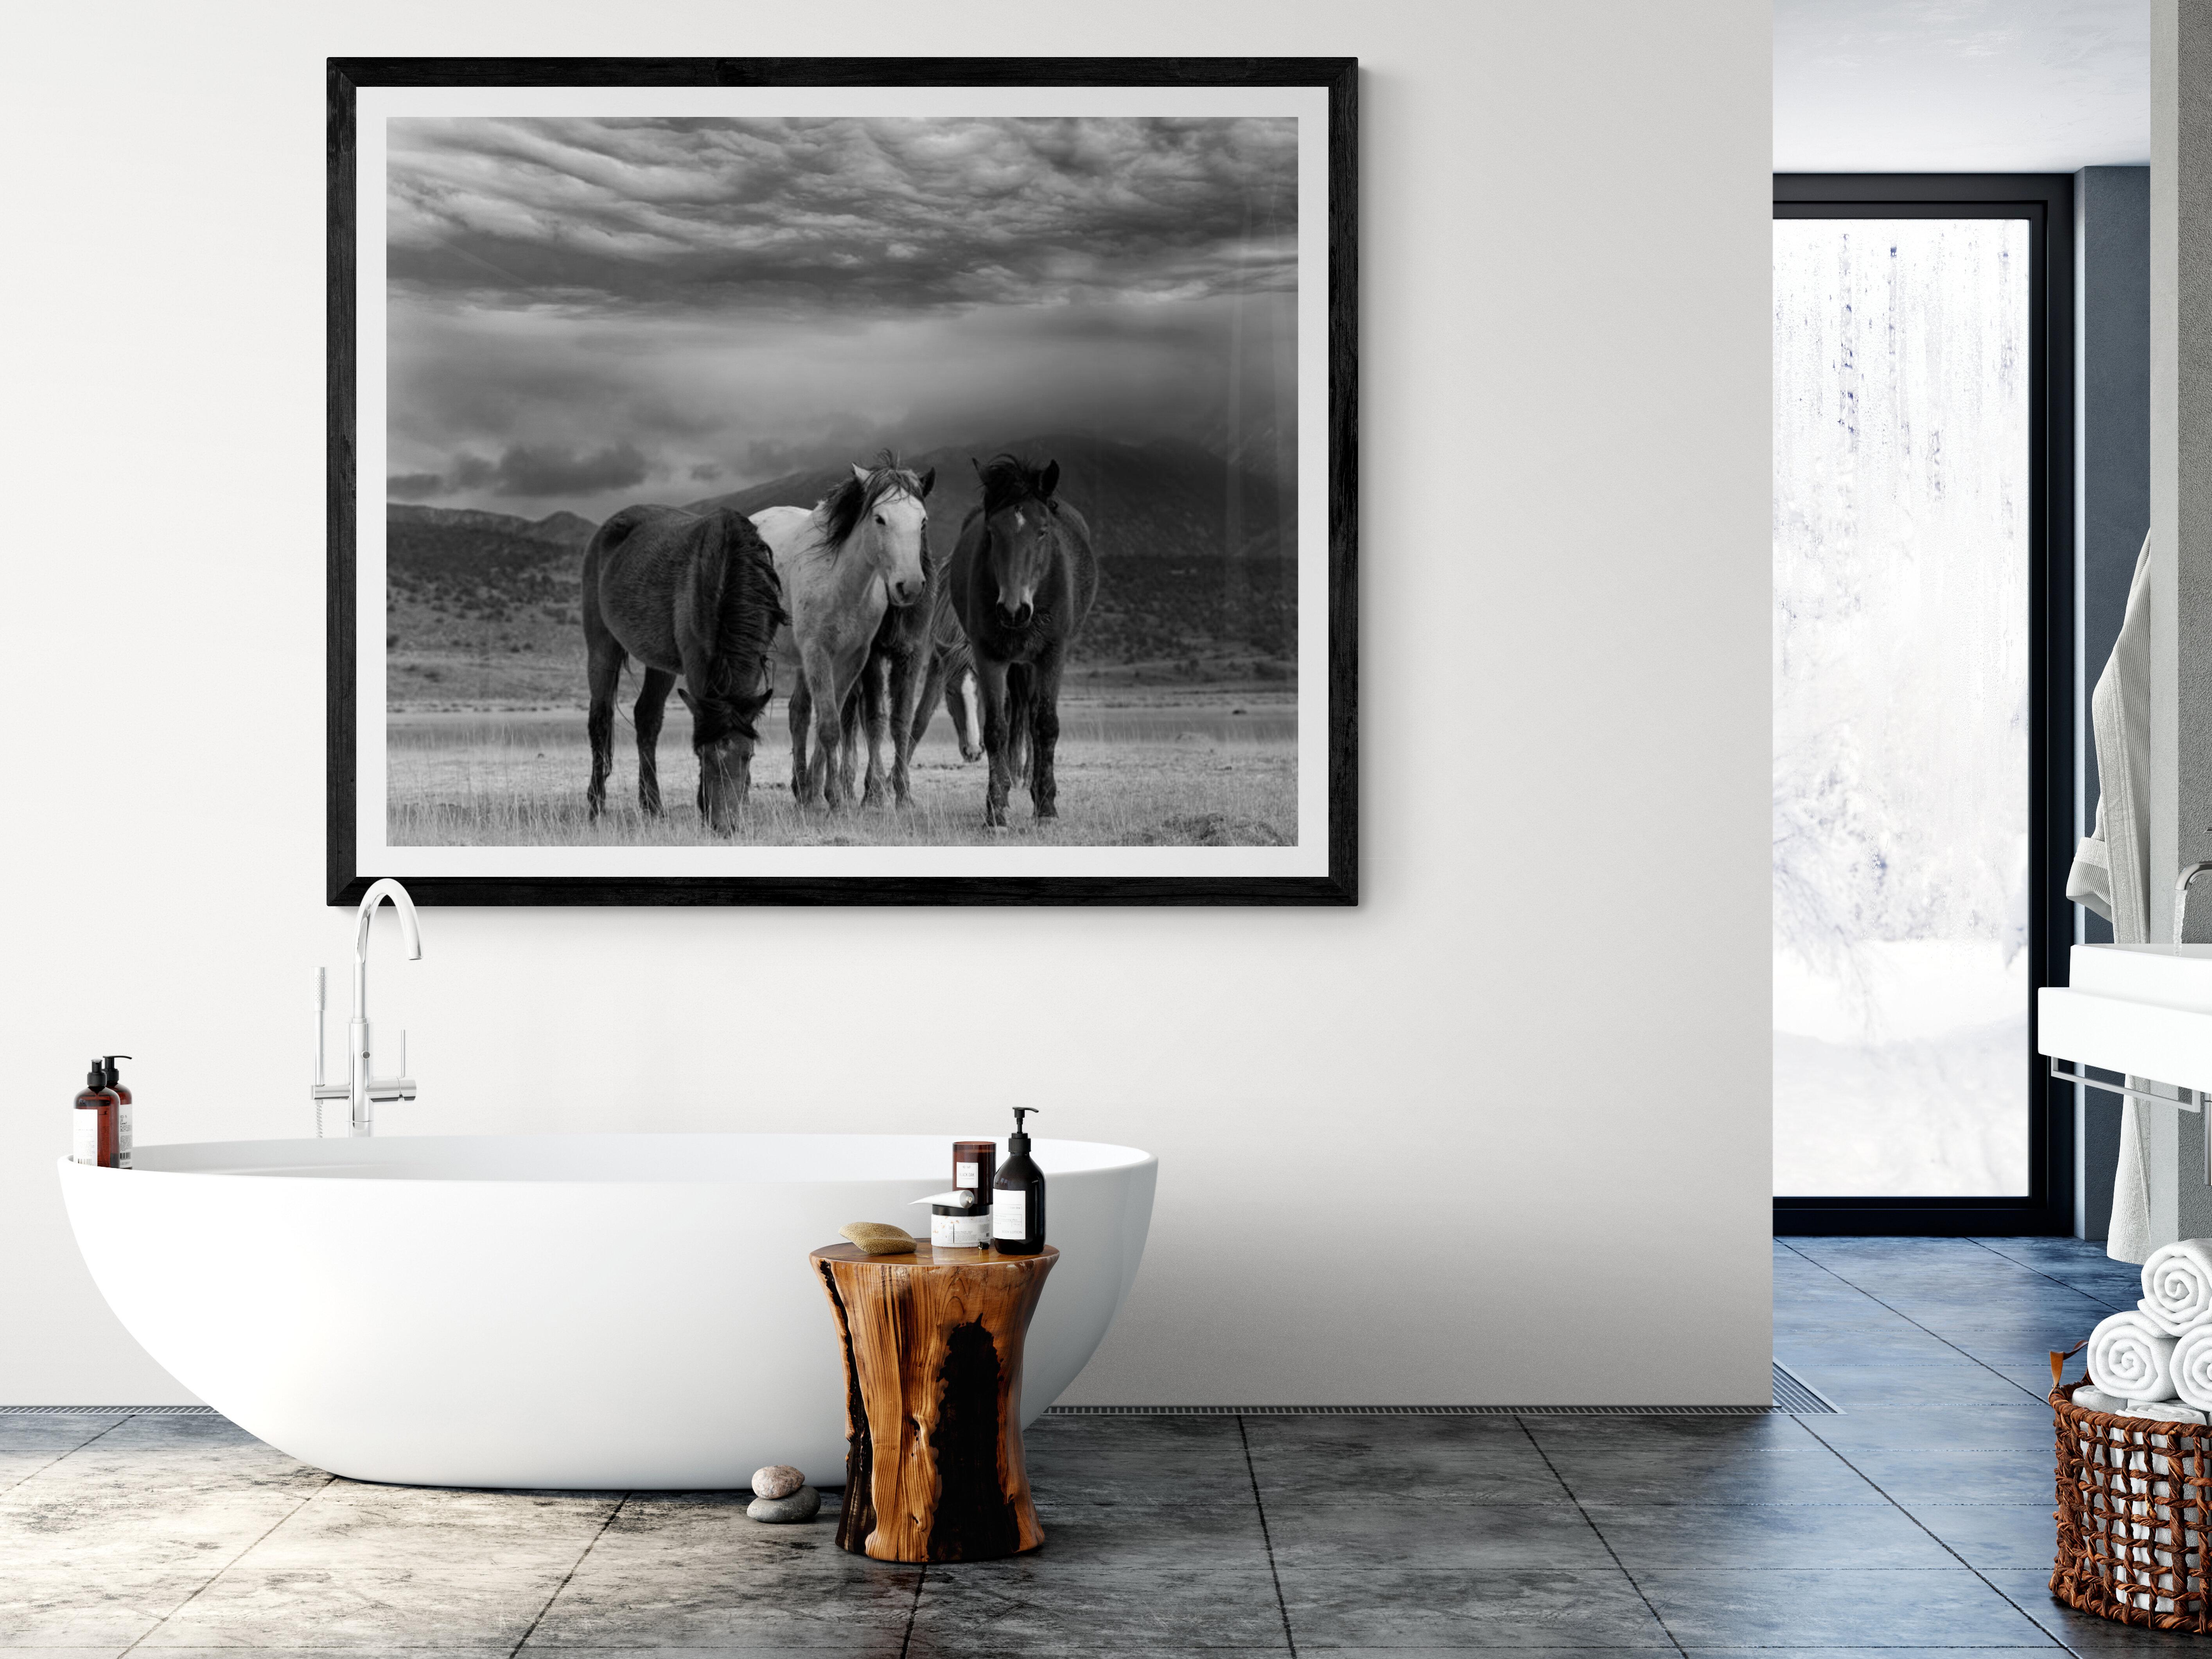 Il s'agit d'une photographie contemporaine en noir et blanc de chevaux sauvages d'Amérique du Nord.
Photographie par Shane Russeck
Imprimé sur du papier d'archives 
Edition de 25
Signé et numéroté
Encadrement disponible. Renseignez-vous sur les